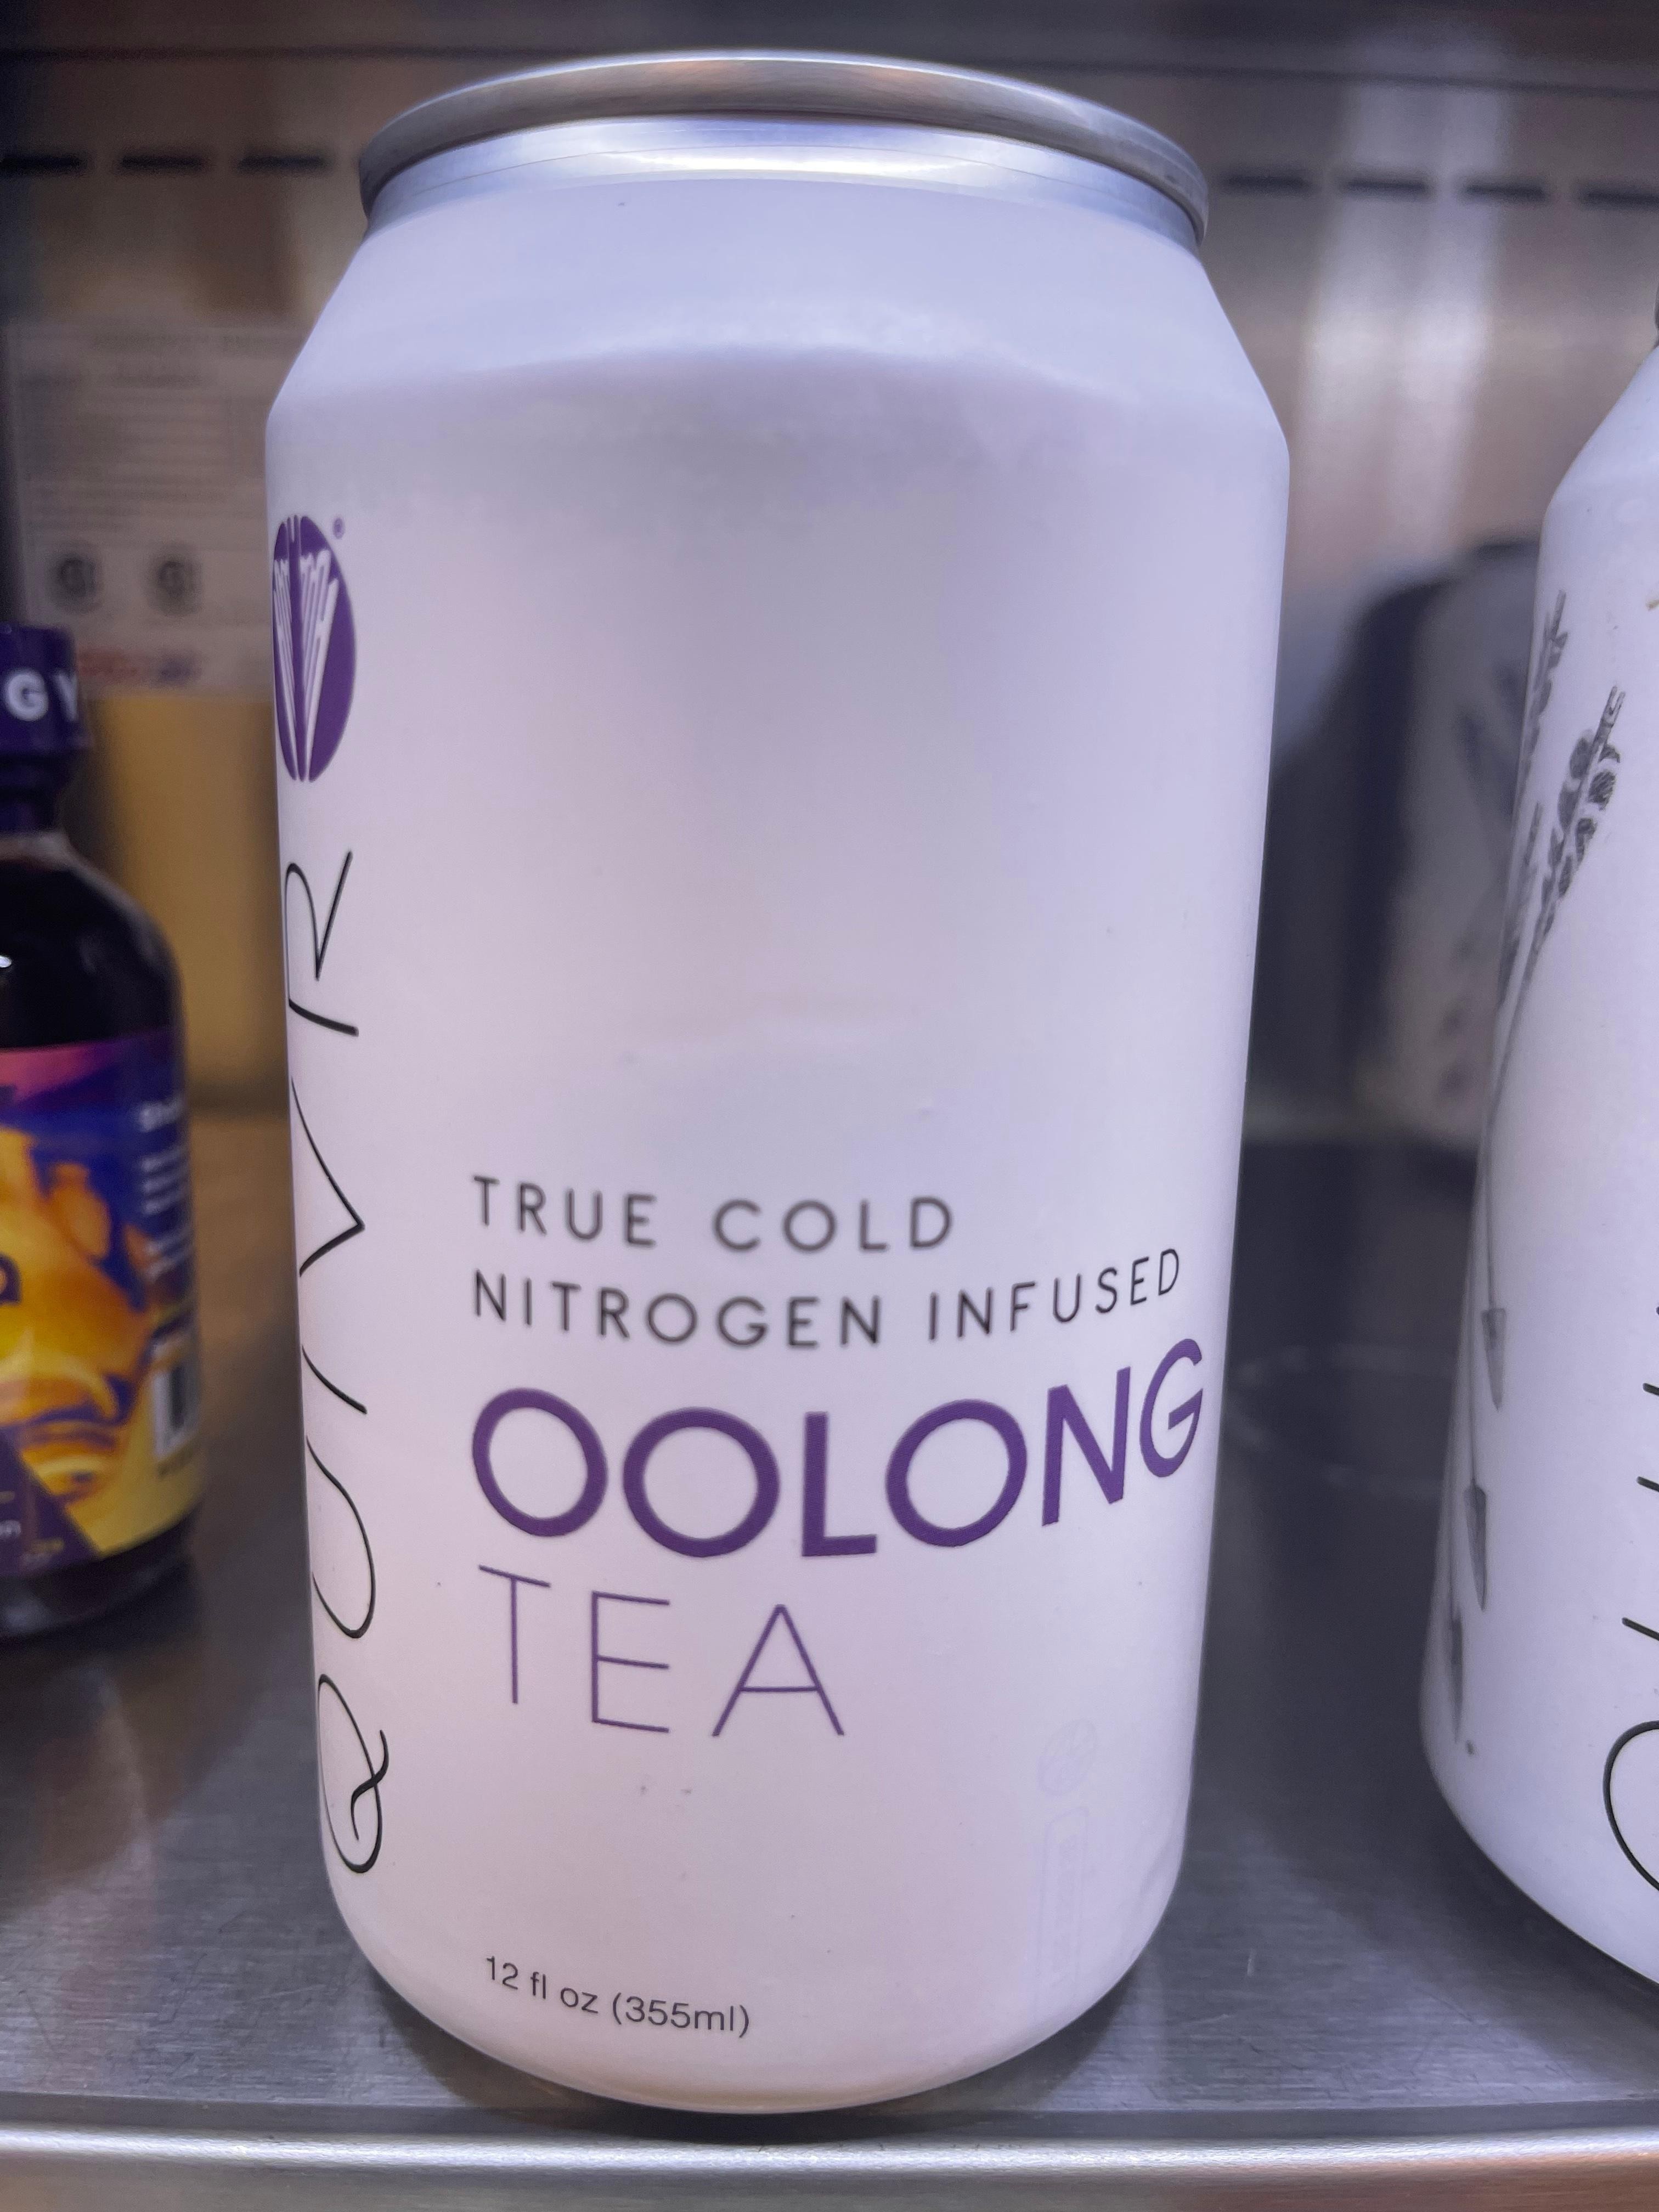 Nitrogen Infused Oolong Tea - Quivr